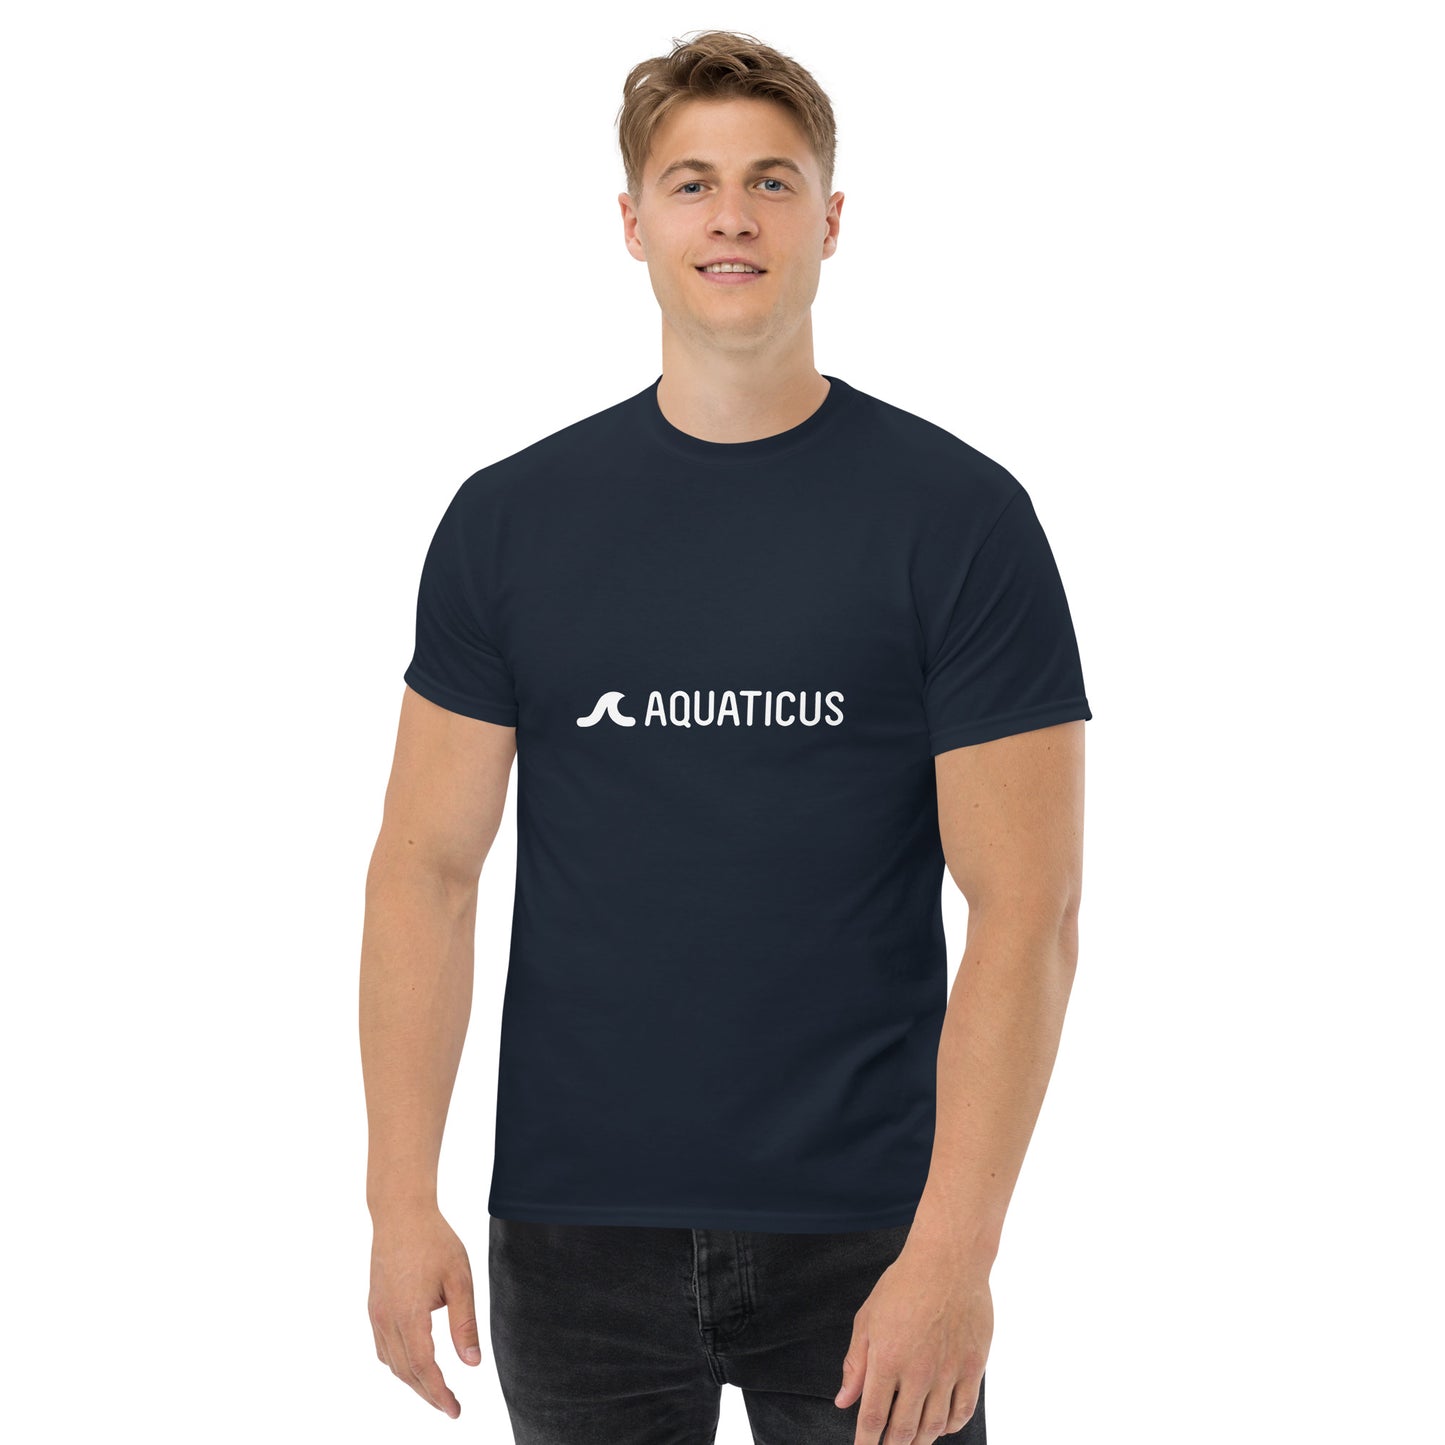 AQUATICUS - Men's classic tee